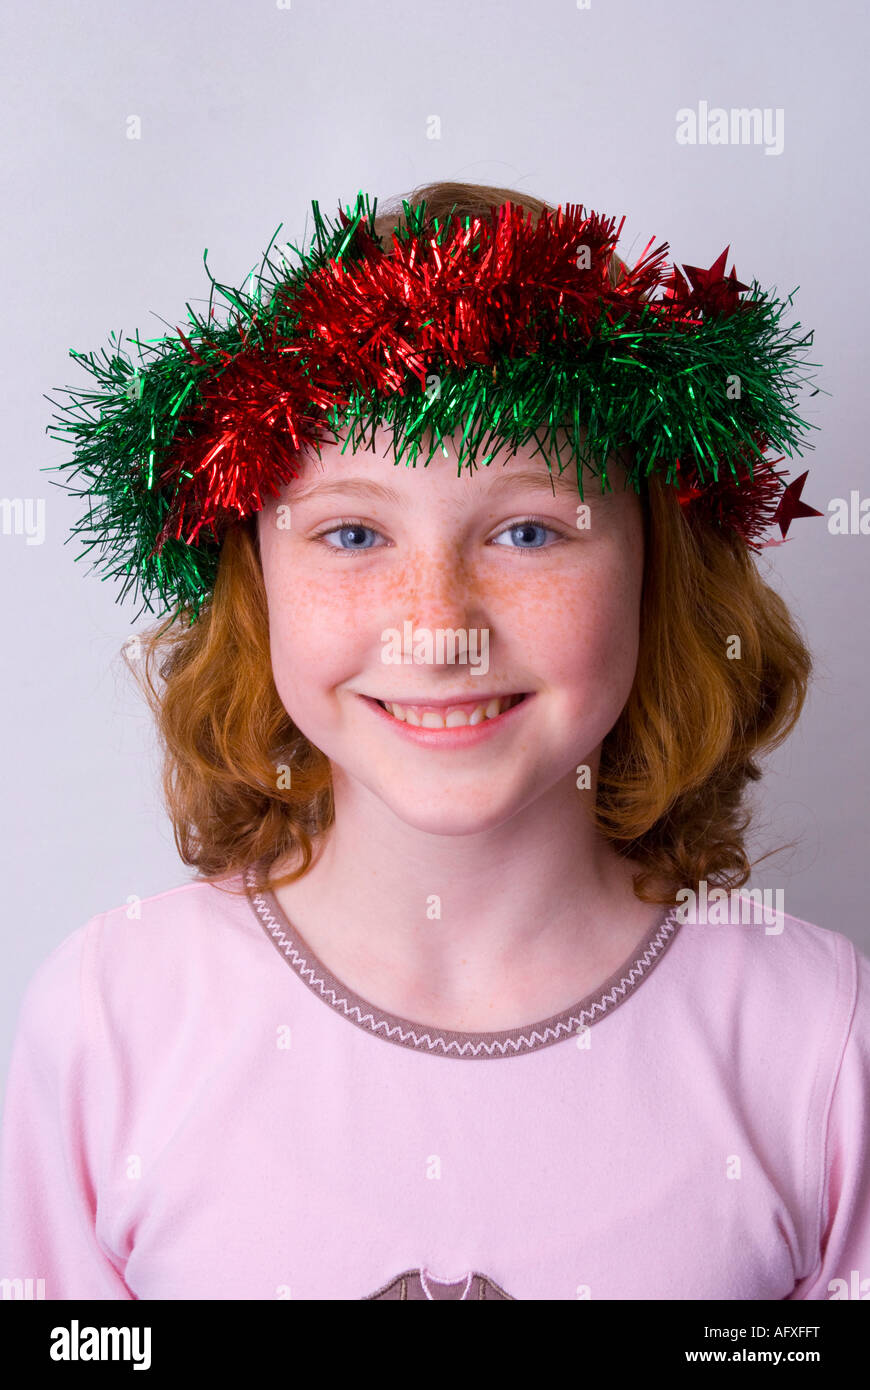 Eine lächelnde blue eyed Sommersprosse konfrontiert 11 Jahres altes Mädchen irischer Herkunft Weihnachts-Lametta im Haar tragen Stockfoto